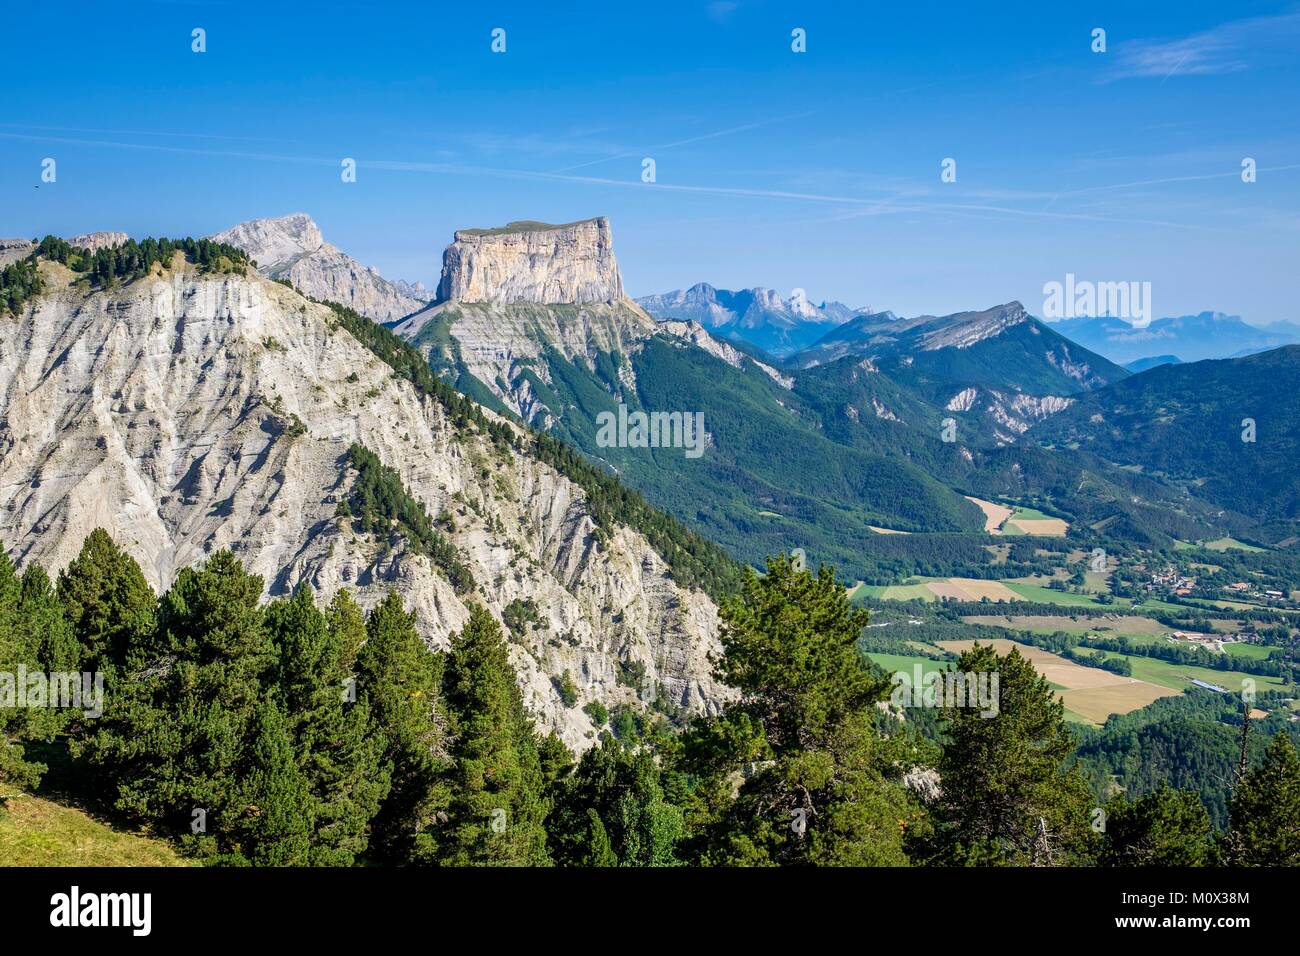 France,Isère,Parc Naturel Régional du Vercors, la réserve naturelle nationale des hauts plateaux du Vercors, vue sur Mont Aiguille (alt : 2087 m) et Grand Veymont (alt : 2341 m), point le plus élevé du massif du Vercors Banque D'Images